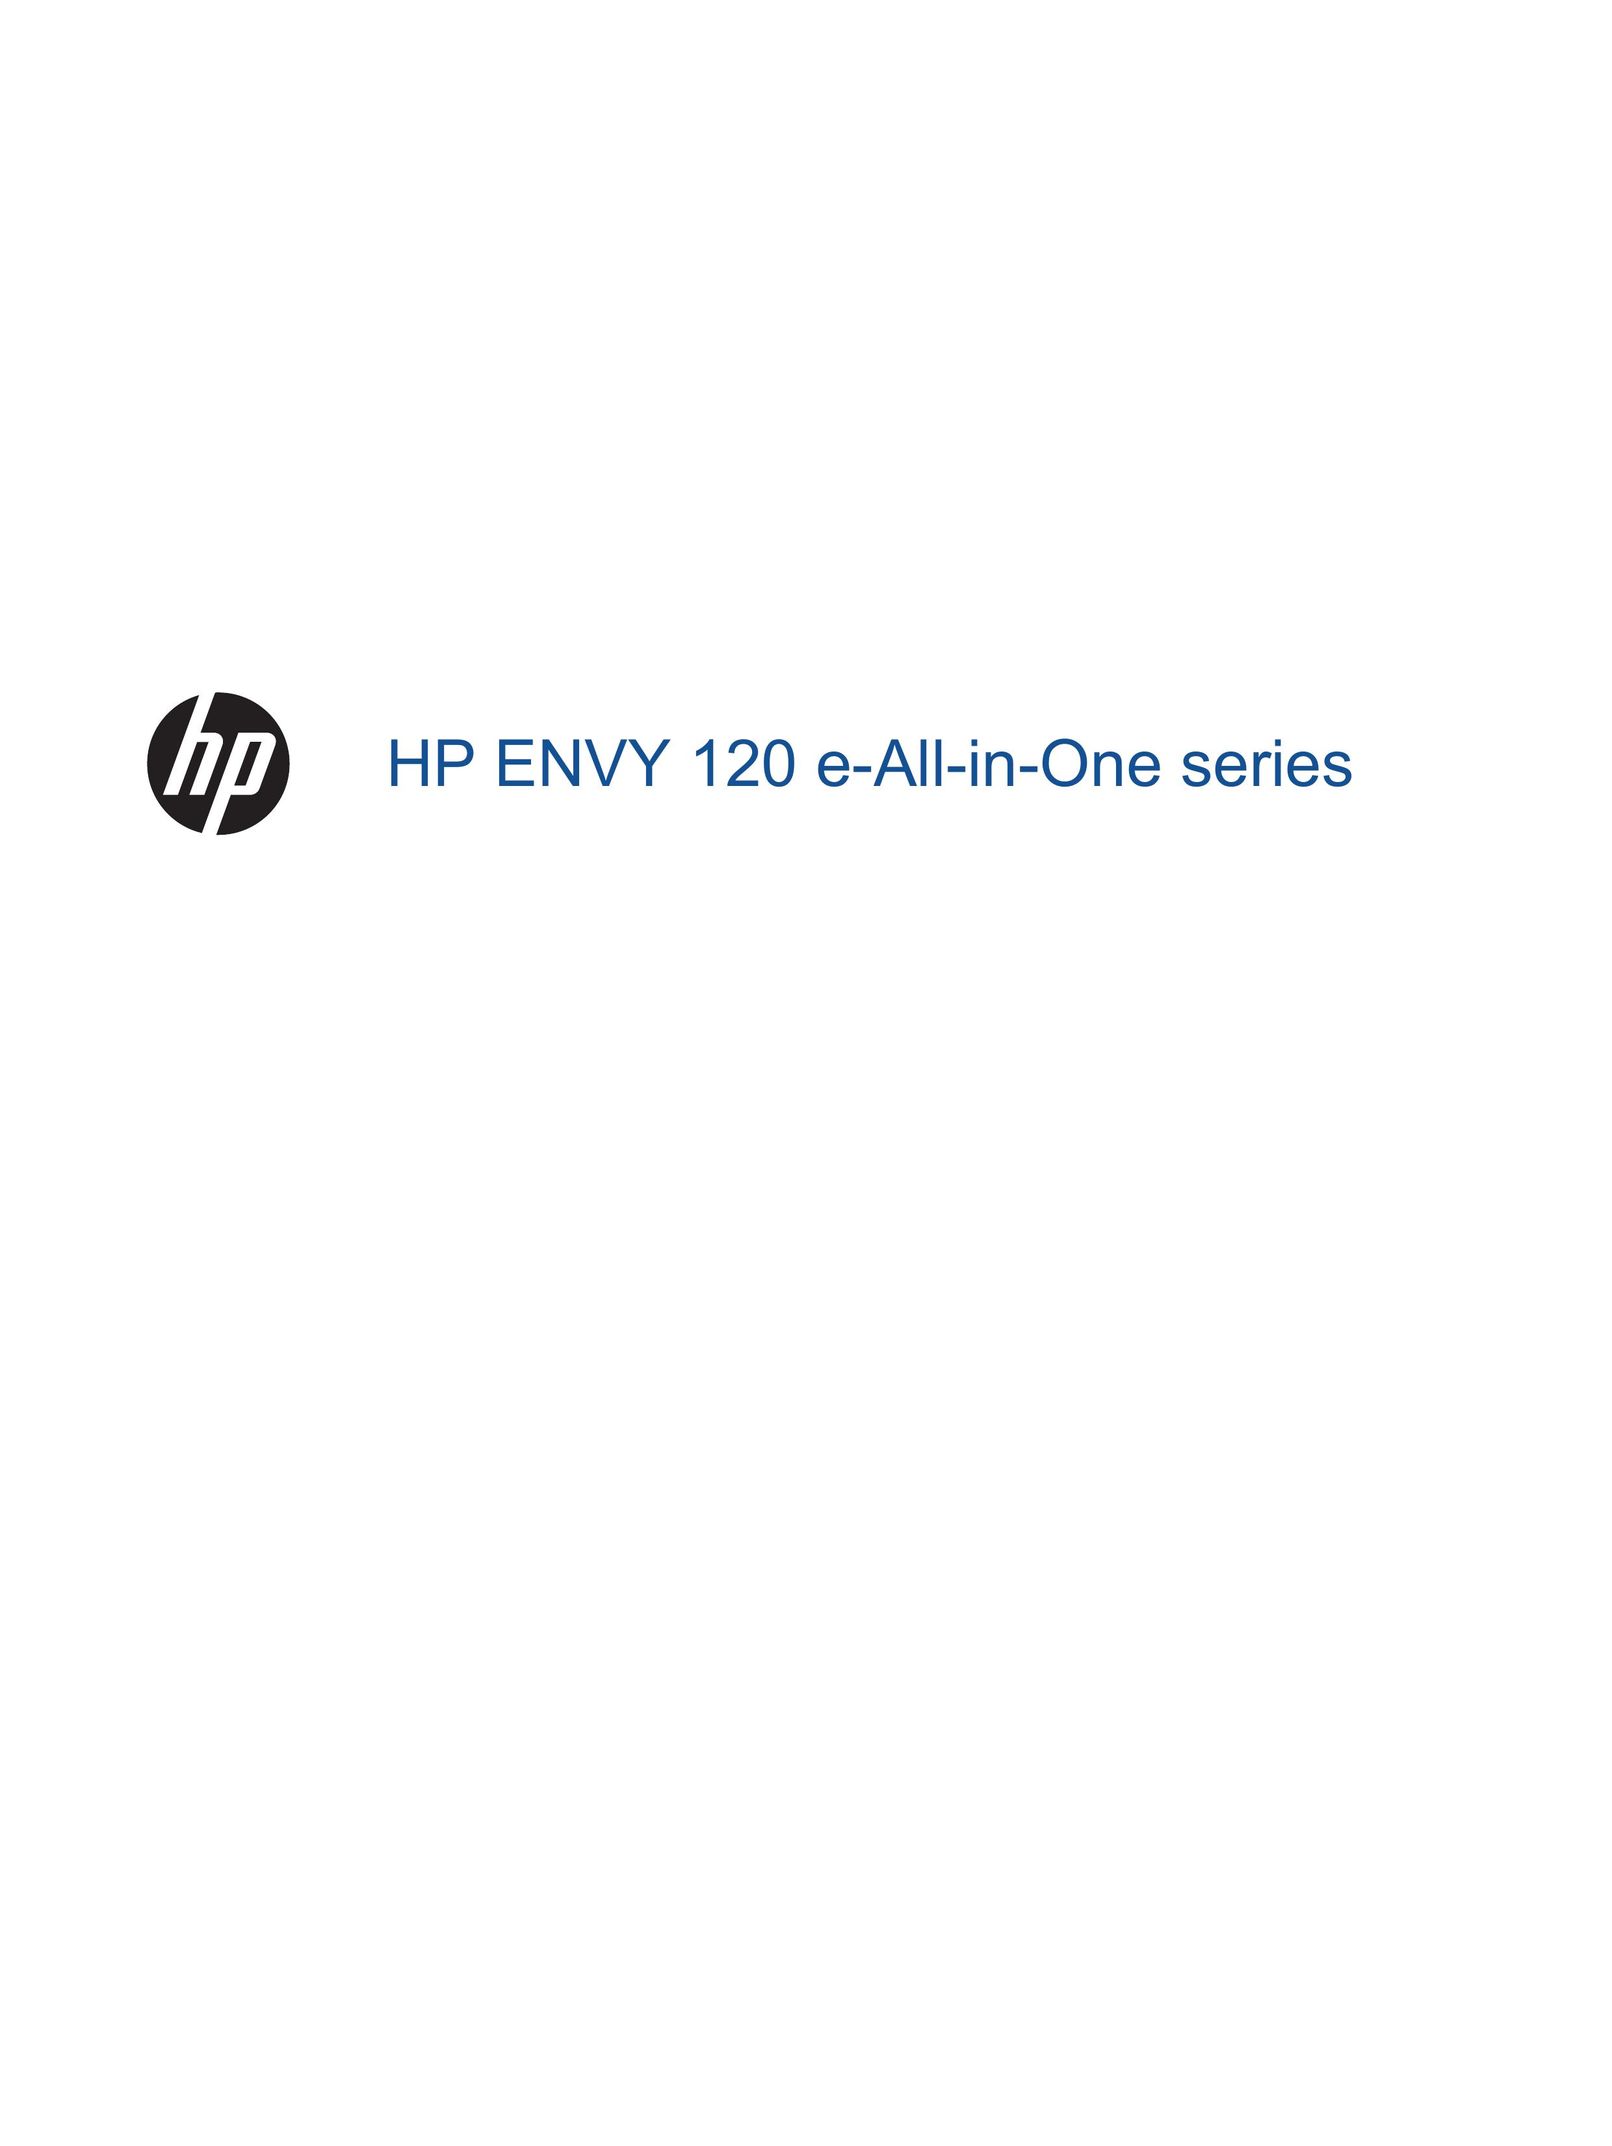 HP (Hewlett-Packard) 120 Personal Computer User Manual